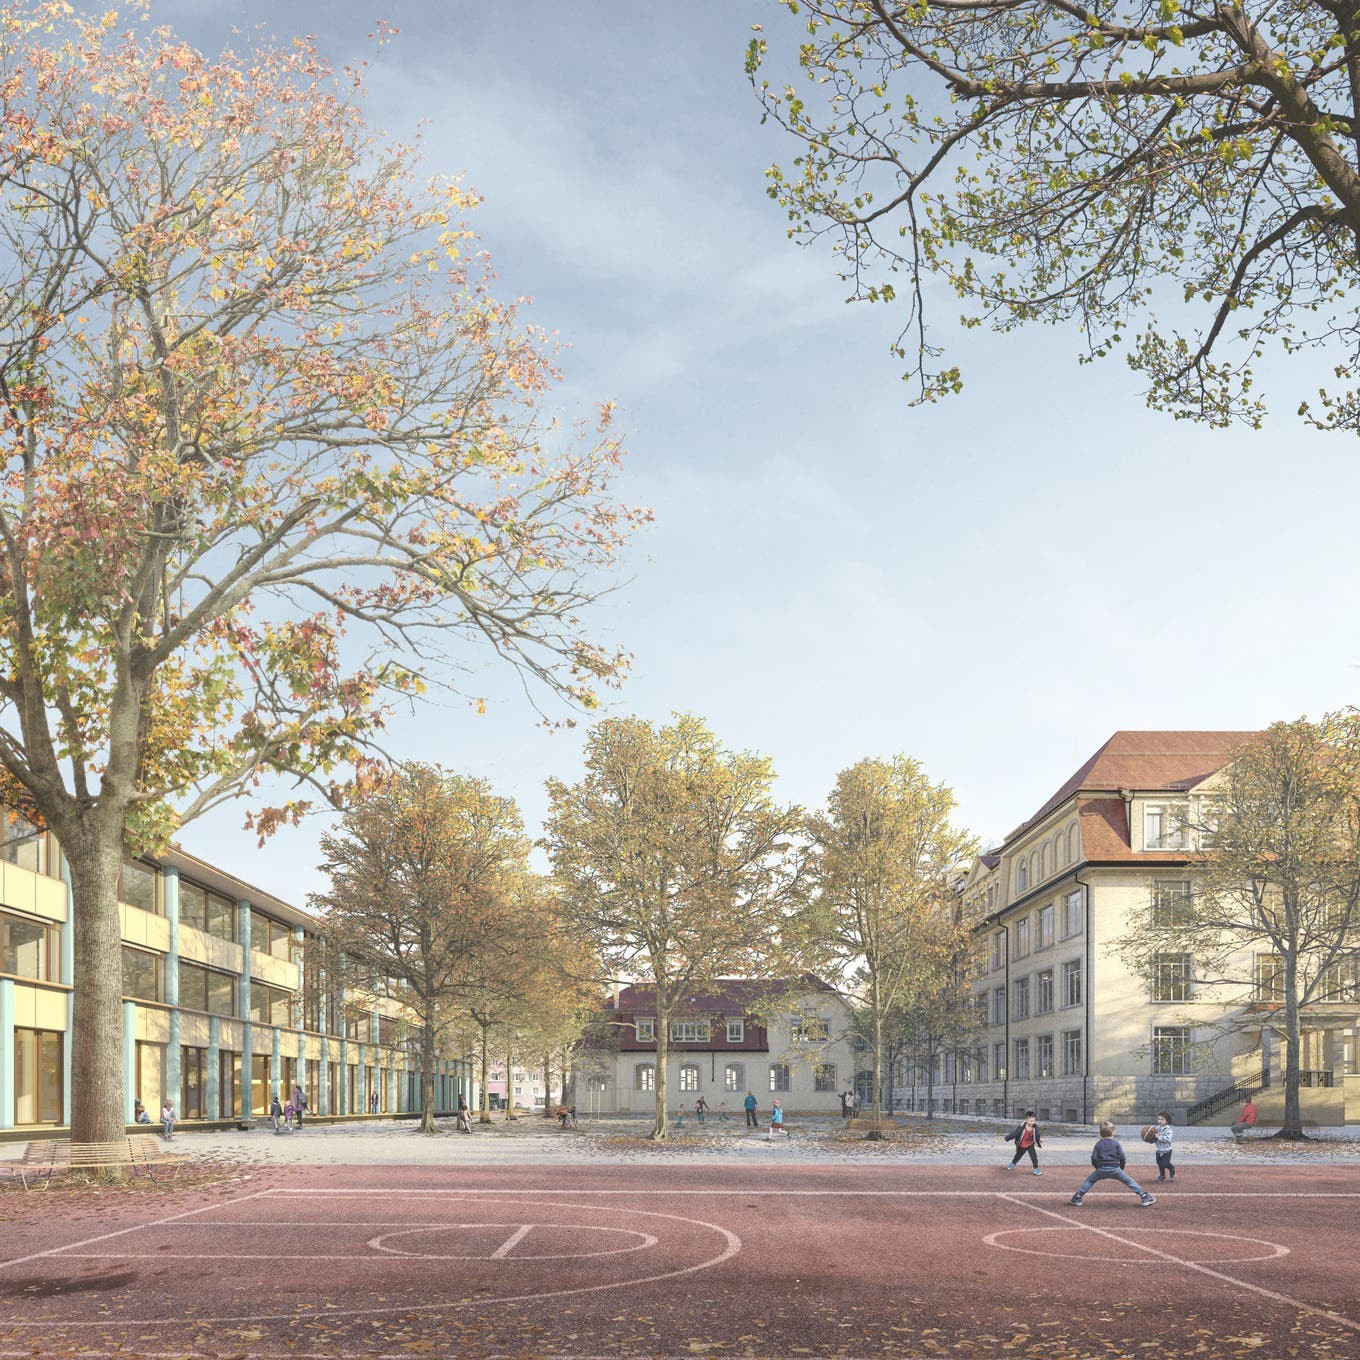 Visualisierung Sanierung Erweiterung Schule Moosmatt in Stadt Luzern